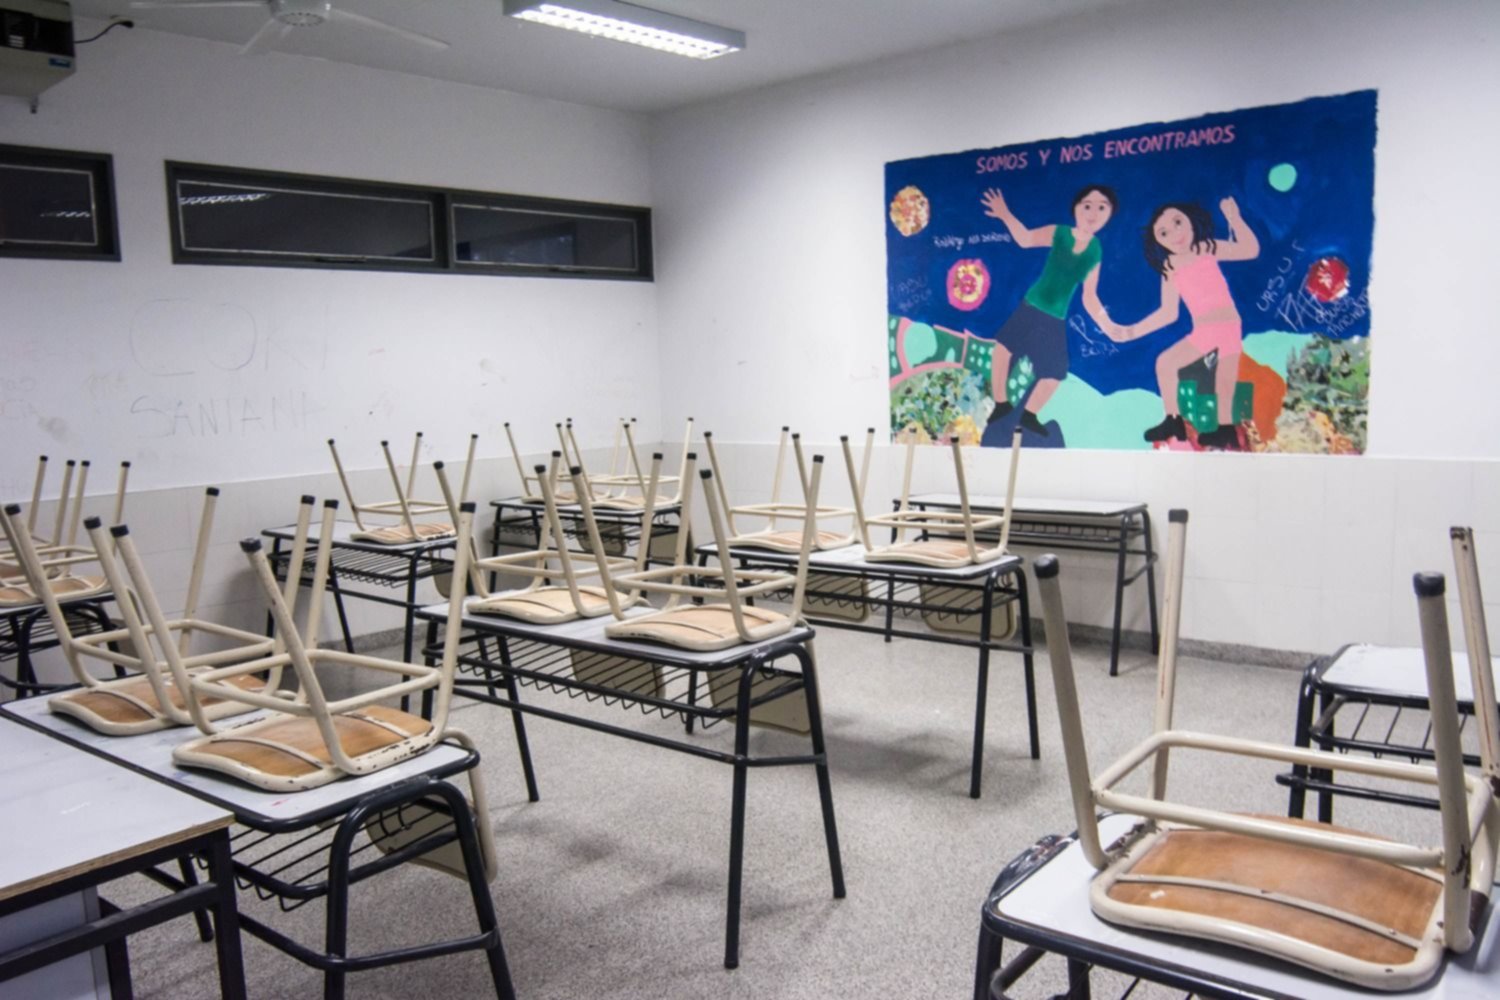 Arrancó el tercer y último día de paro en escuelas de La Plata